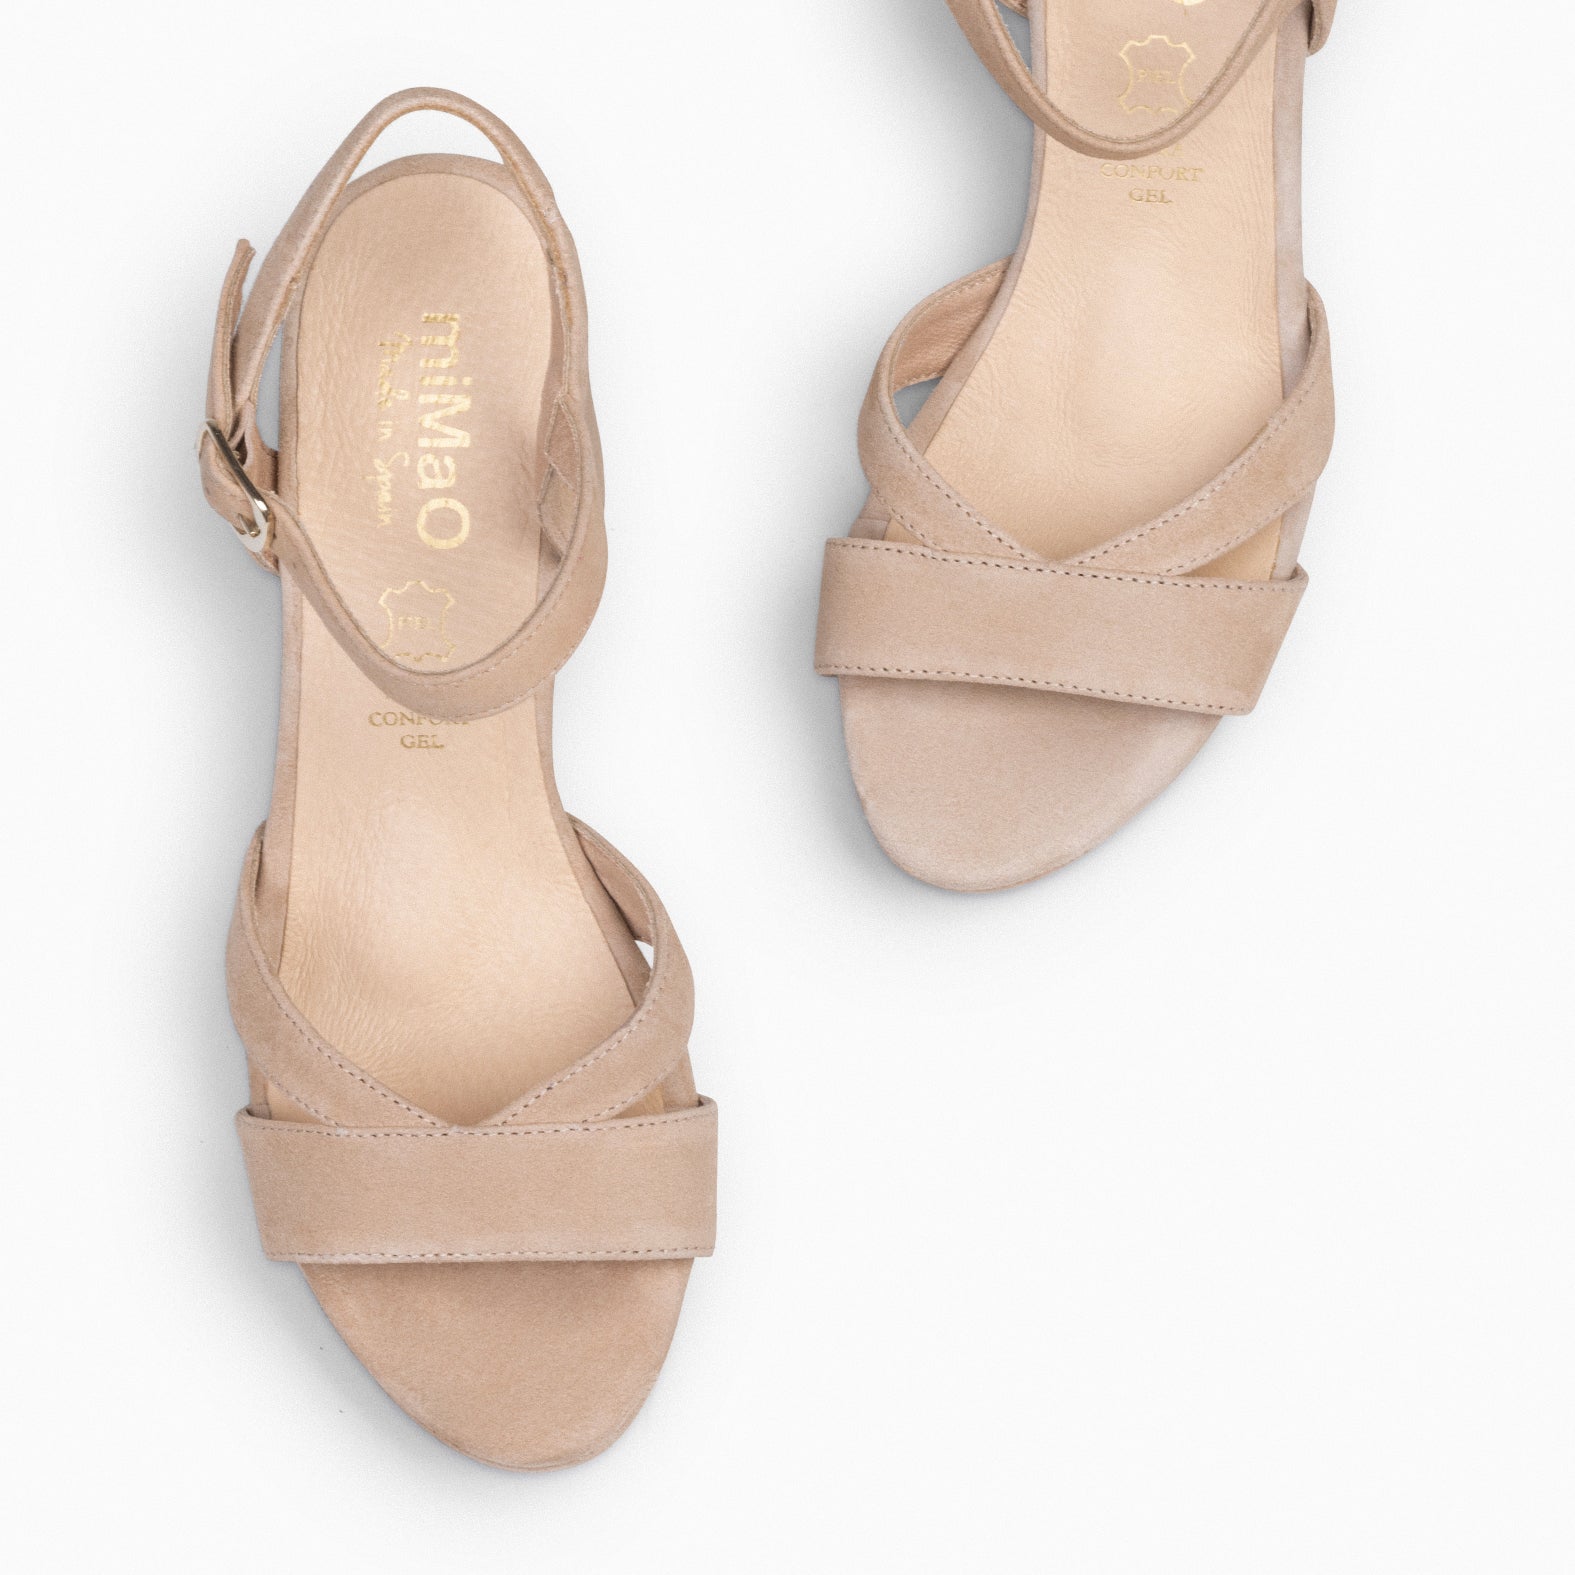 PARIS – TAN high heel sandal with platform